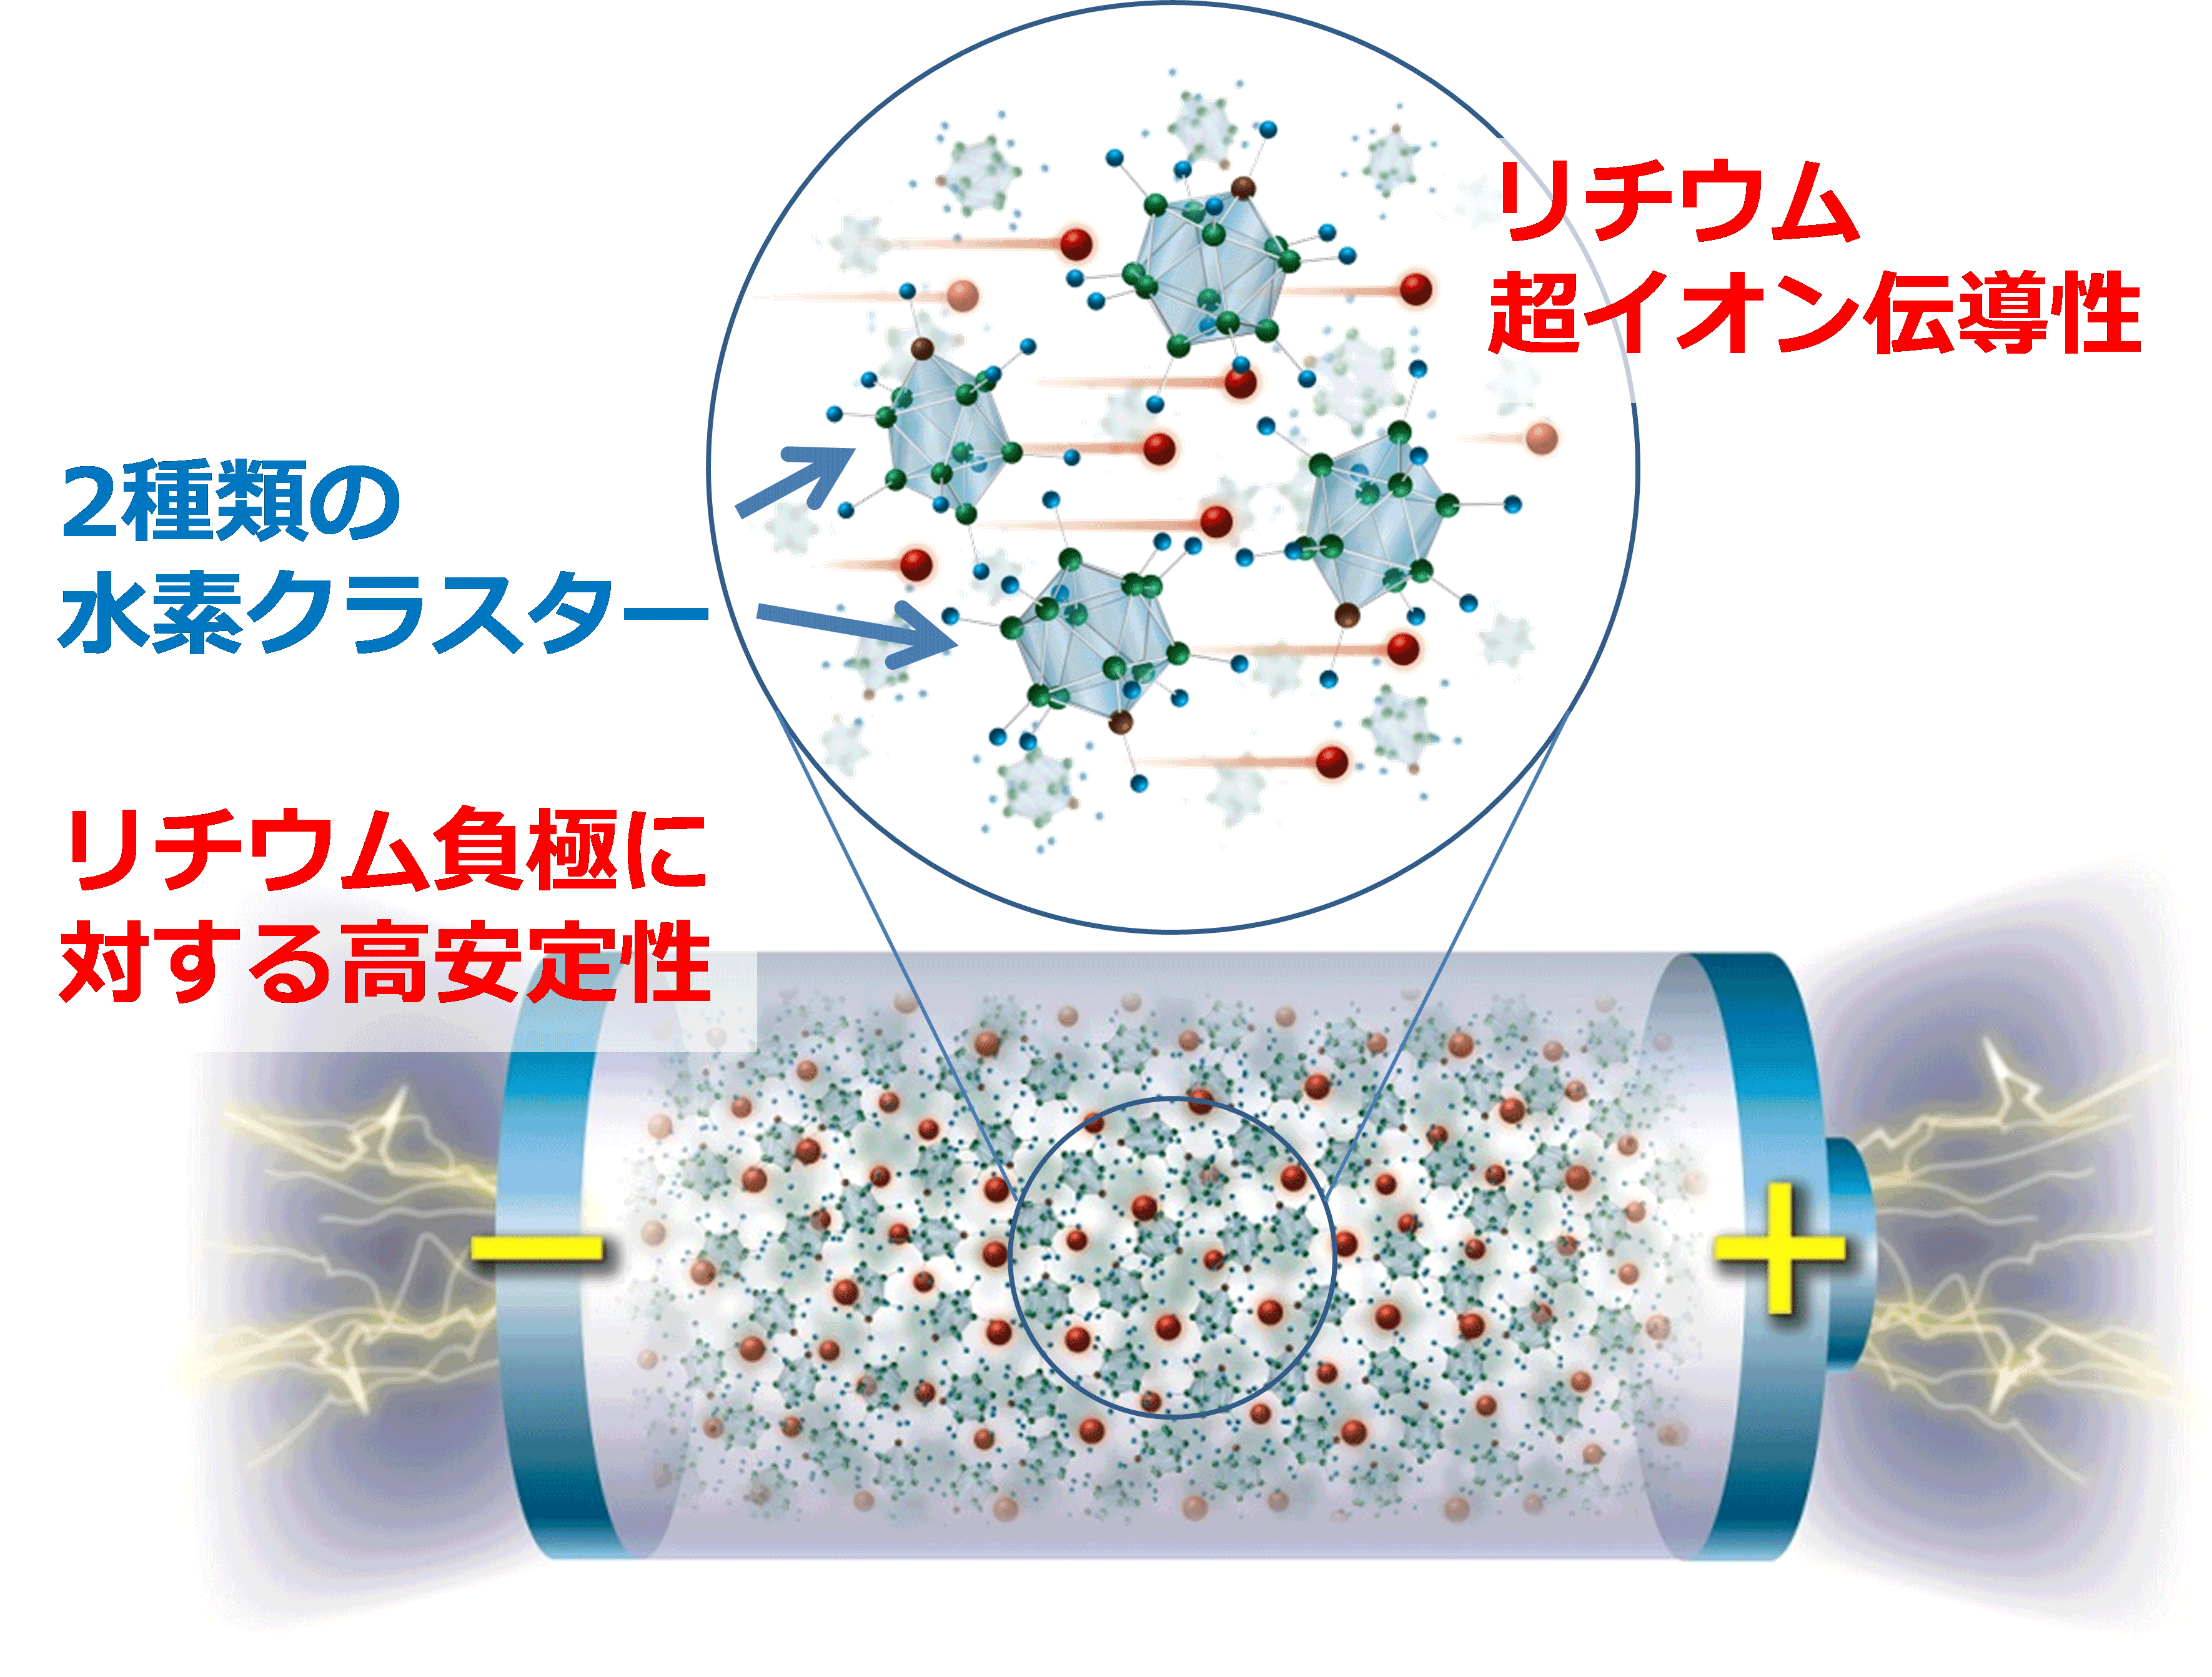 新たなリチウム超イオン伝導材料を開発